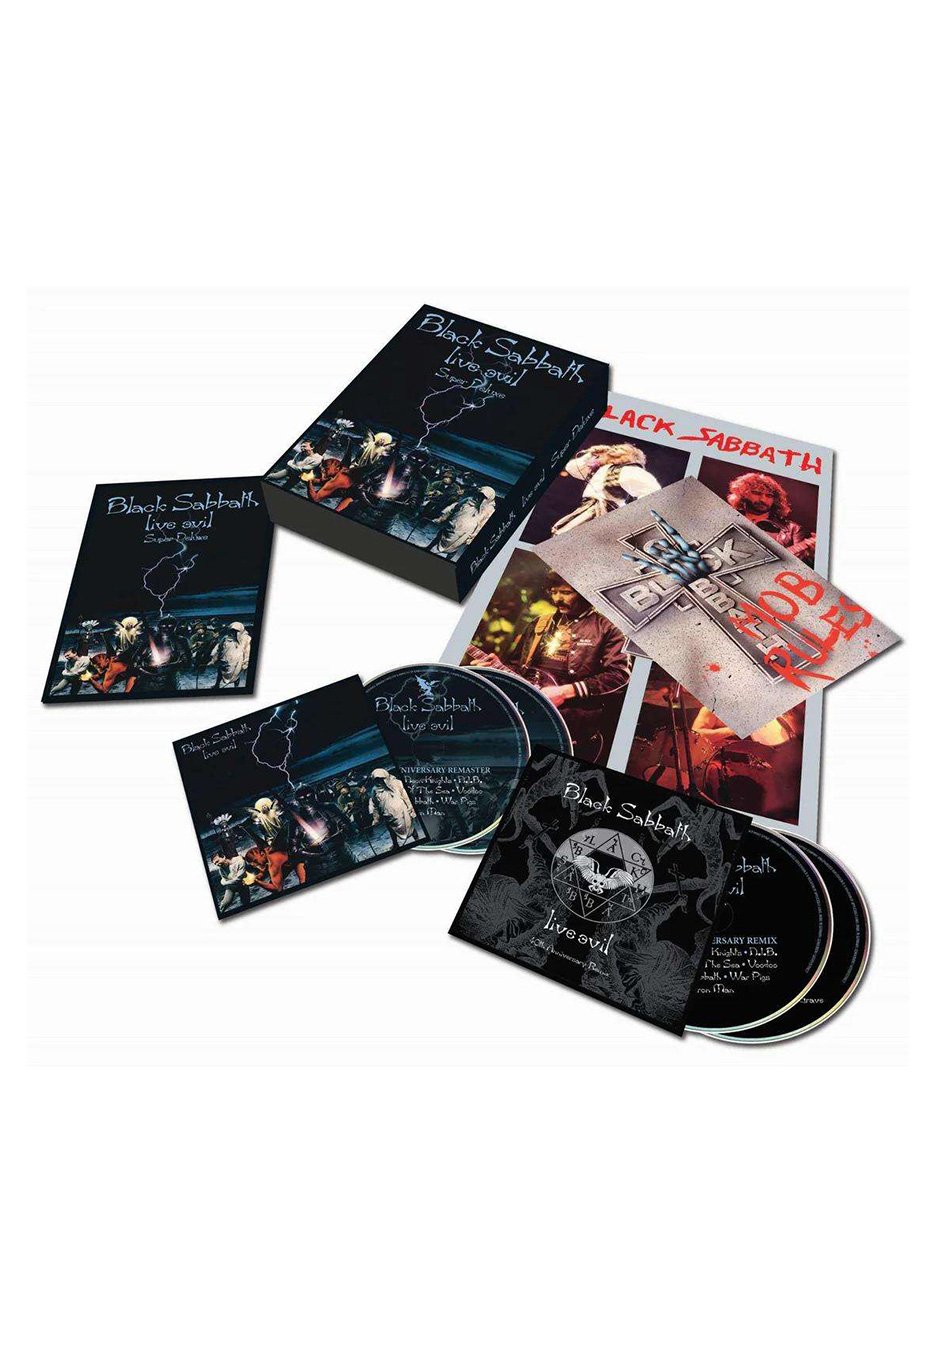 Black Sabbath - Vol. 4 (Super Deluxe Edition Box Set) [5 LP